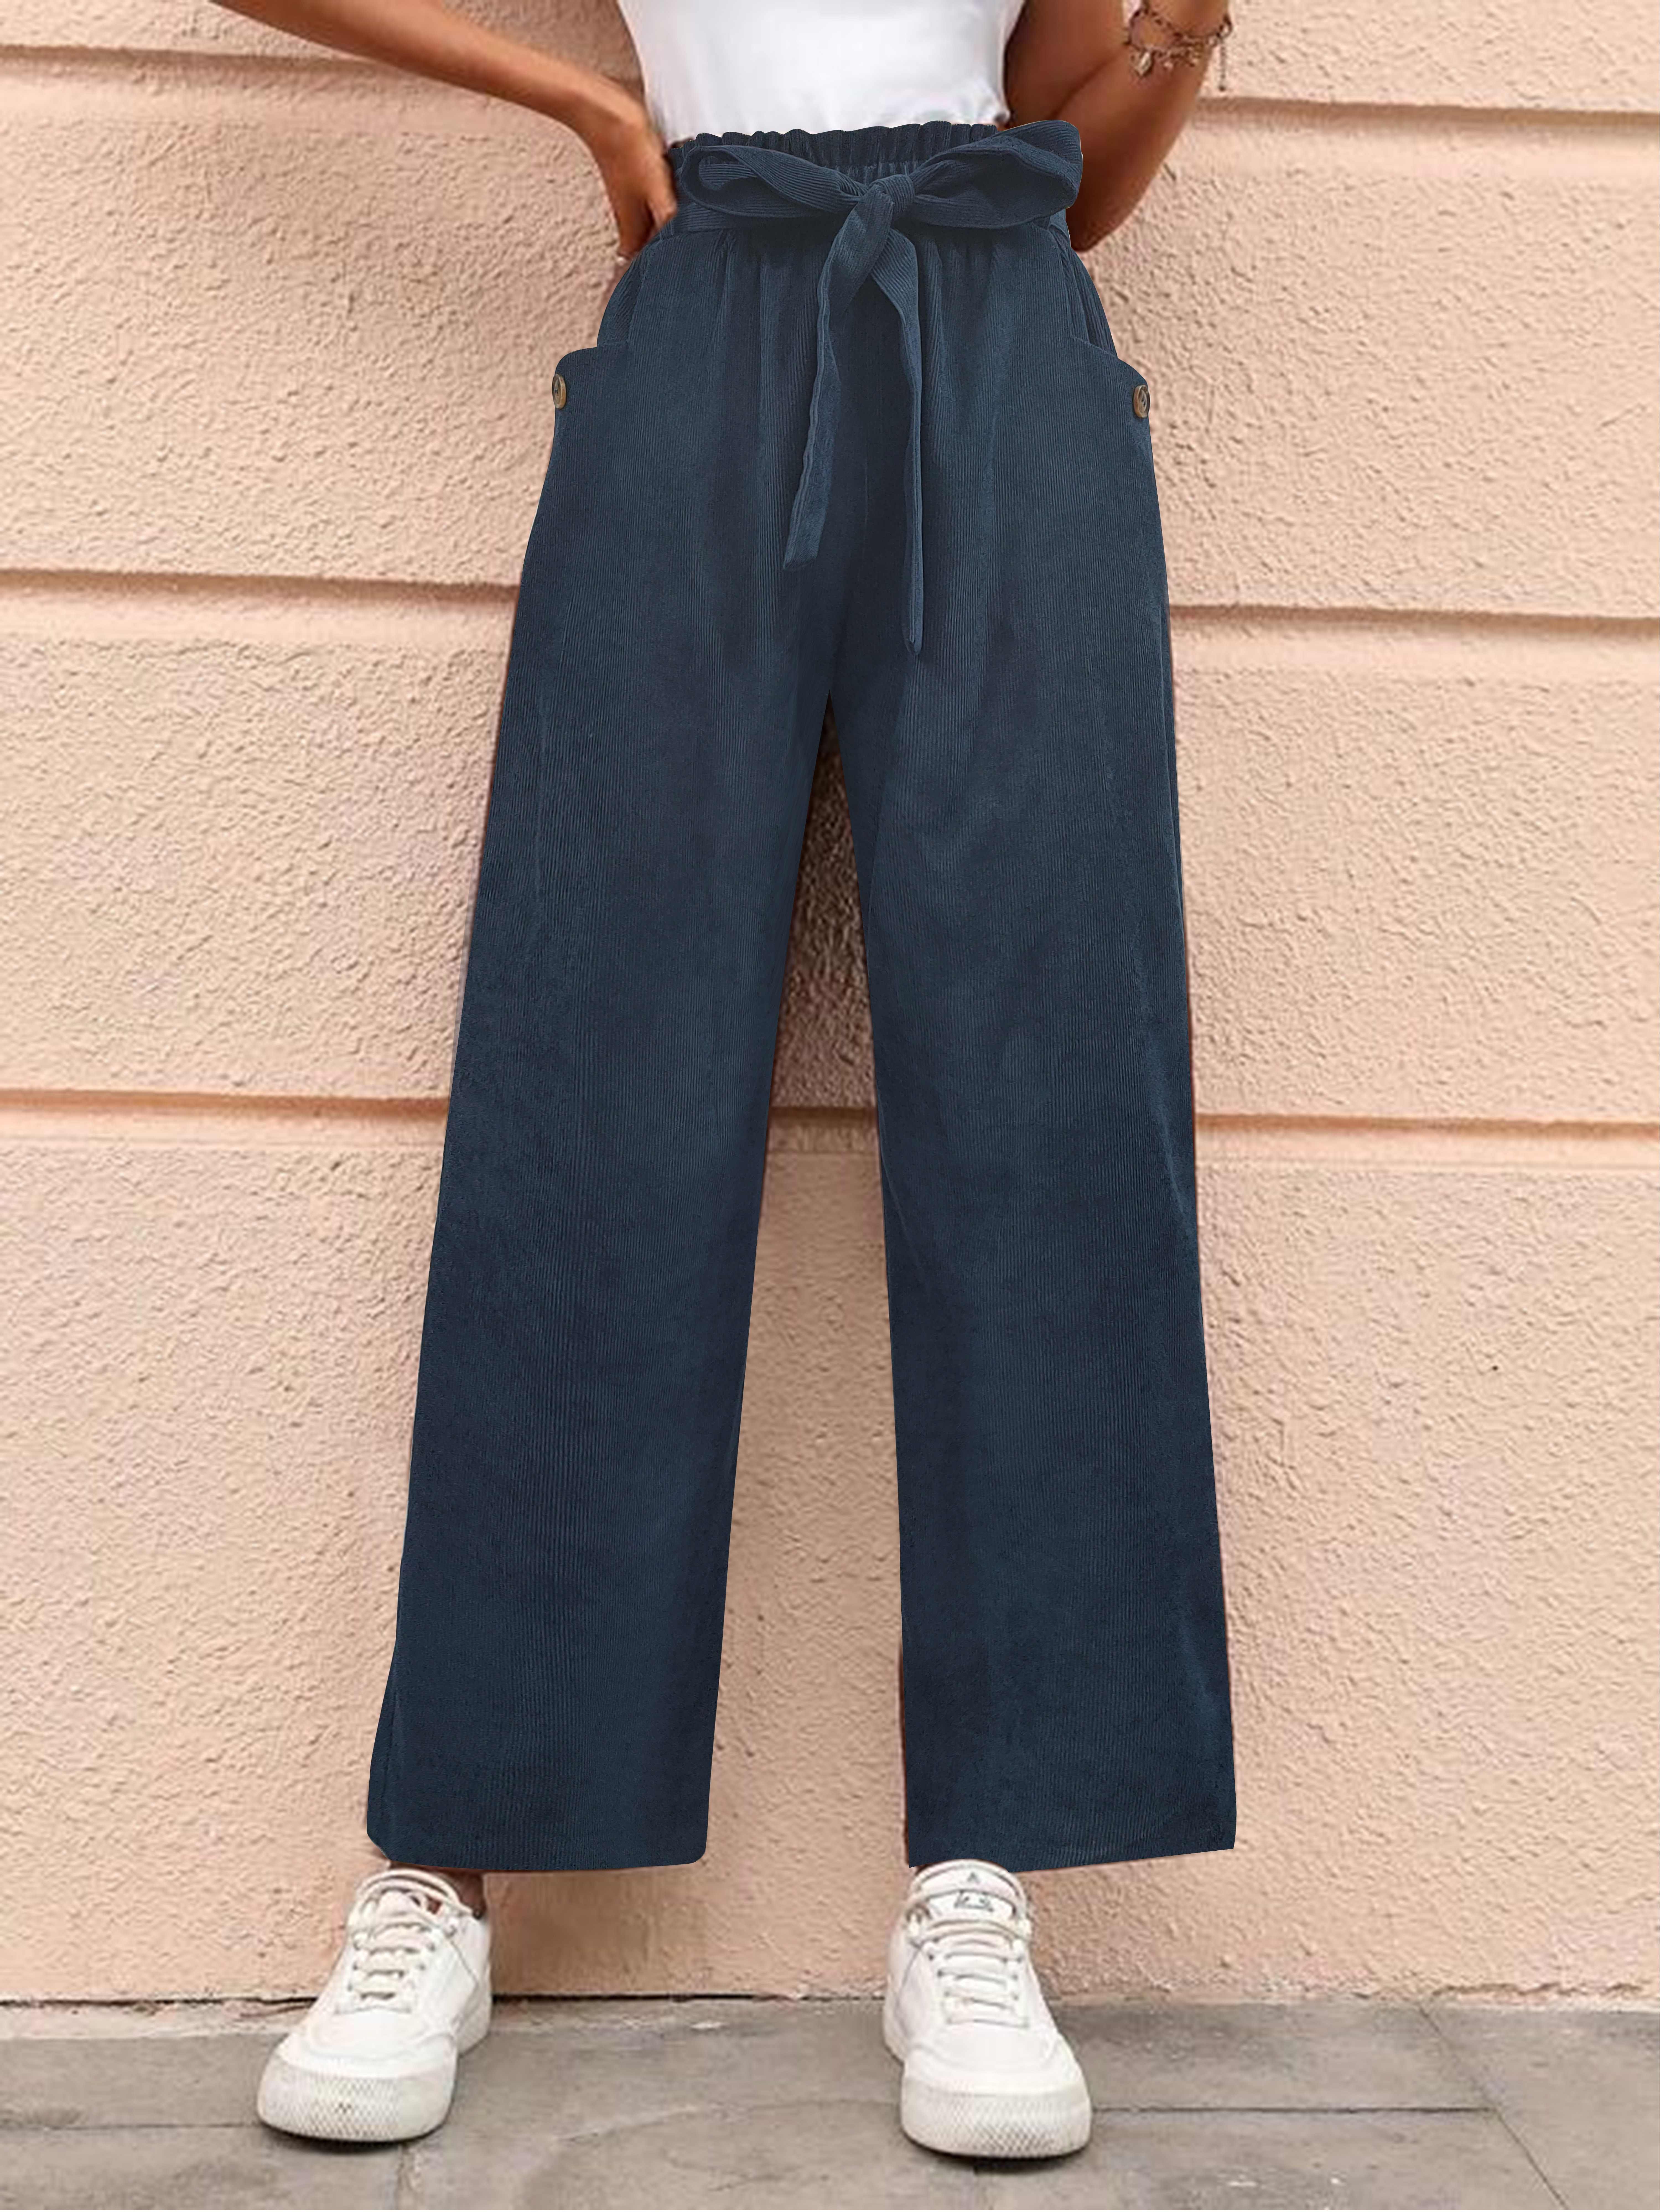 Solidne Spodnie Z Paskiem W Talii, Spodnie W Stylu Vintage Z Prostymi Nogawkami I Kieszenią, Odzież Damska